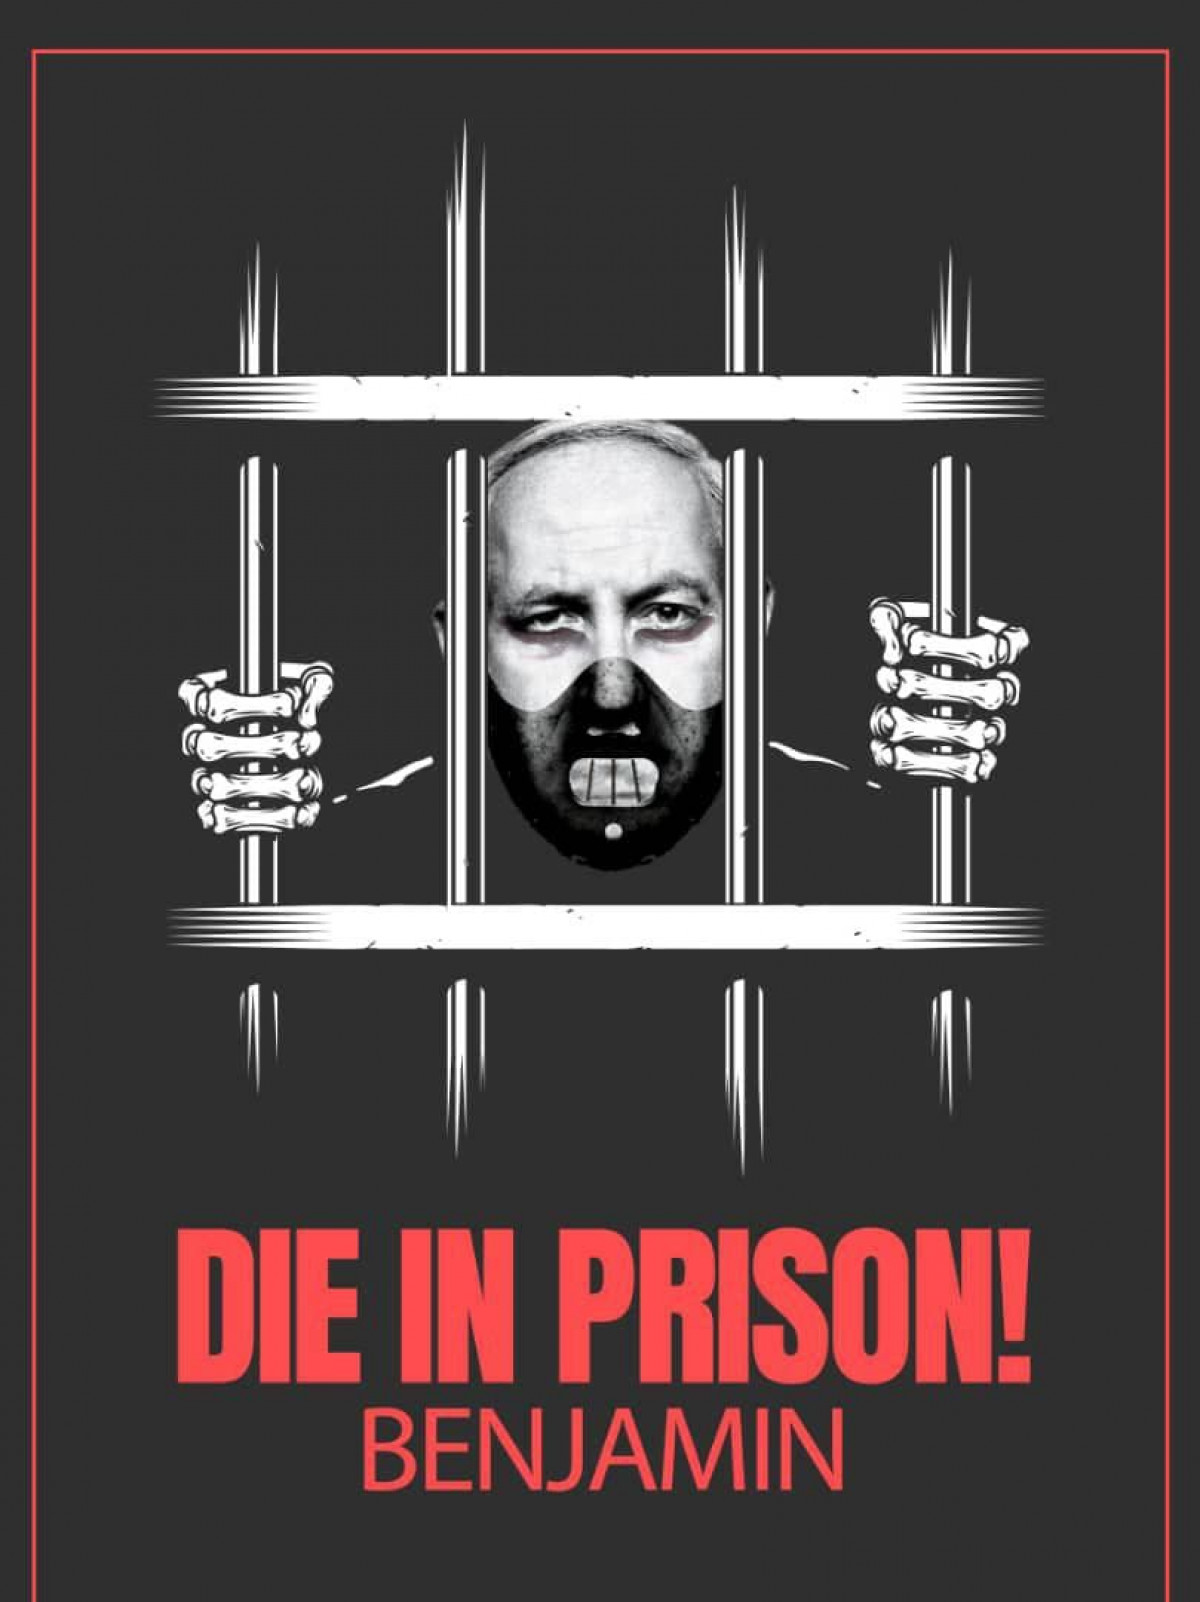 DIE IN PRISON!